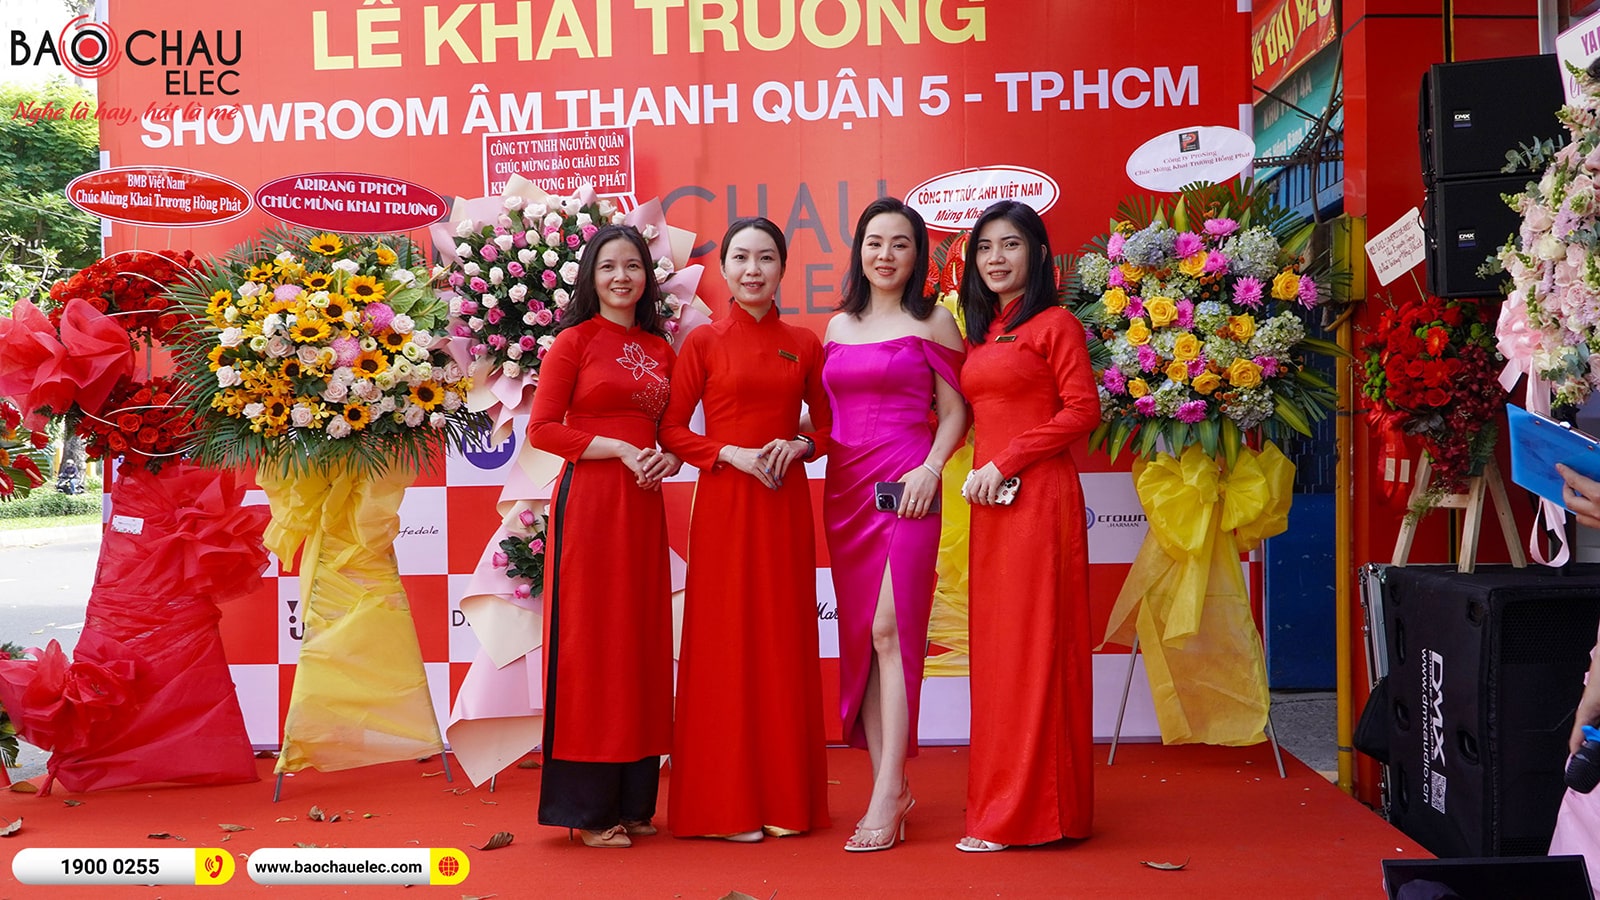 Giới thiệu Showroom Âm Thanh Bảo Châu Elec Quận 5 – TPHCM 